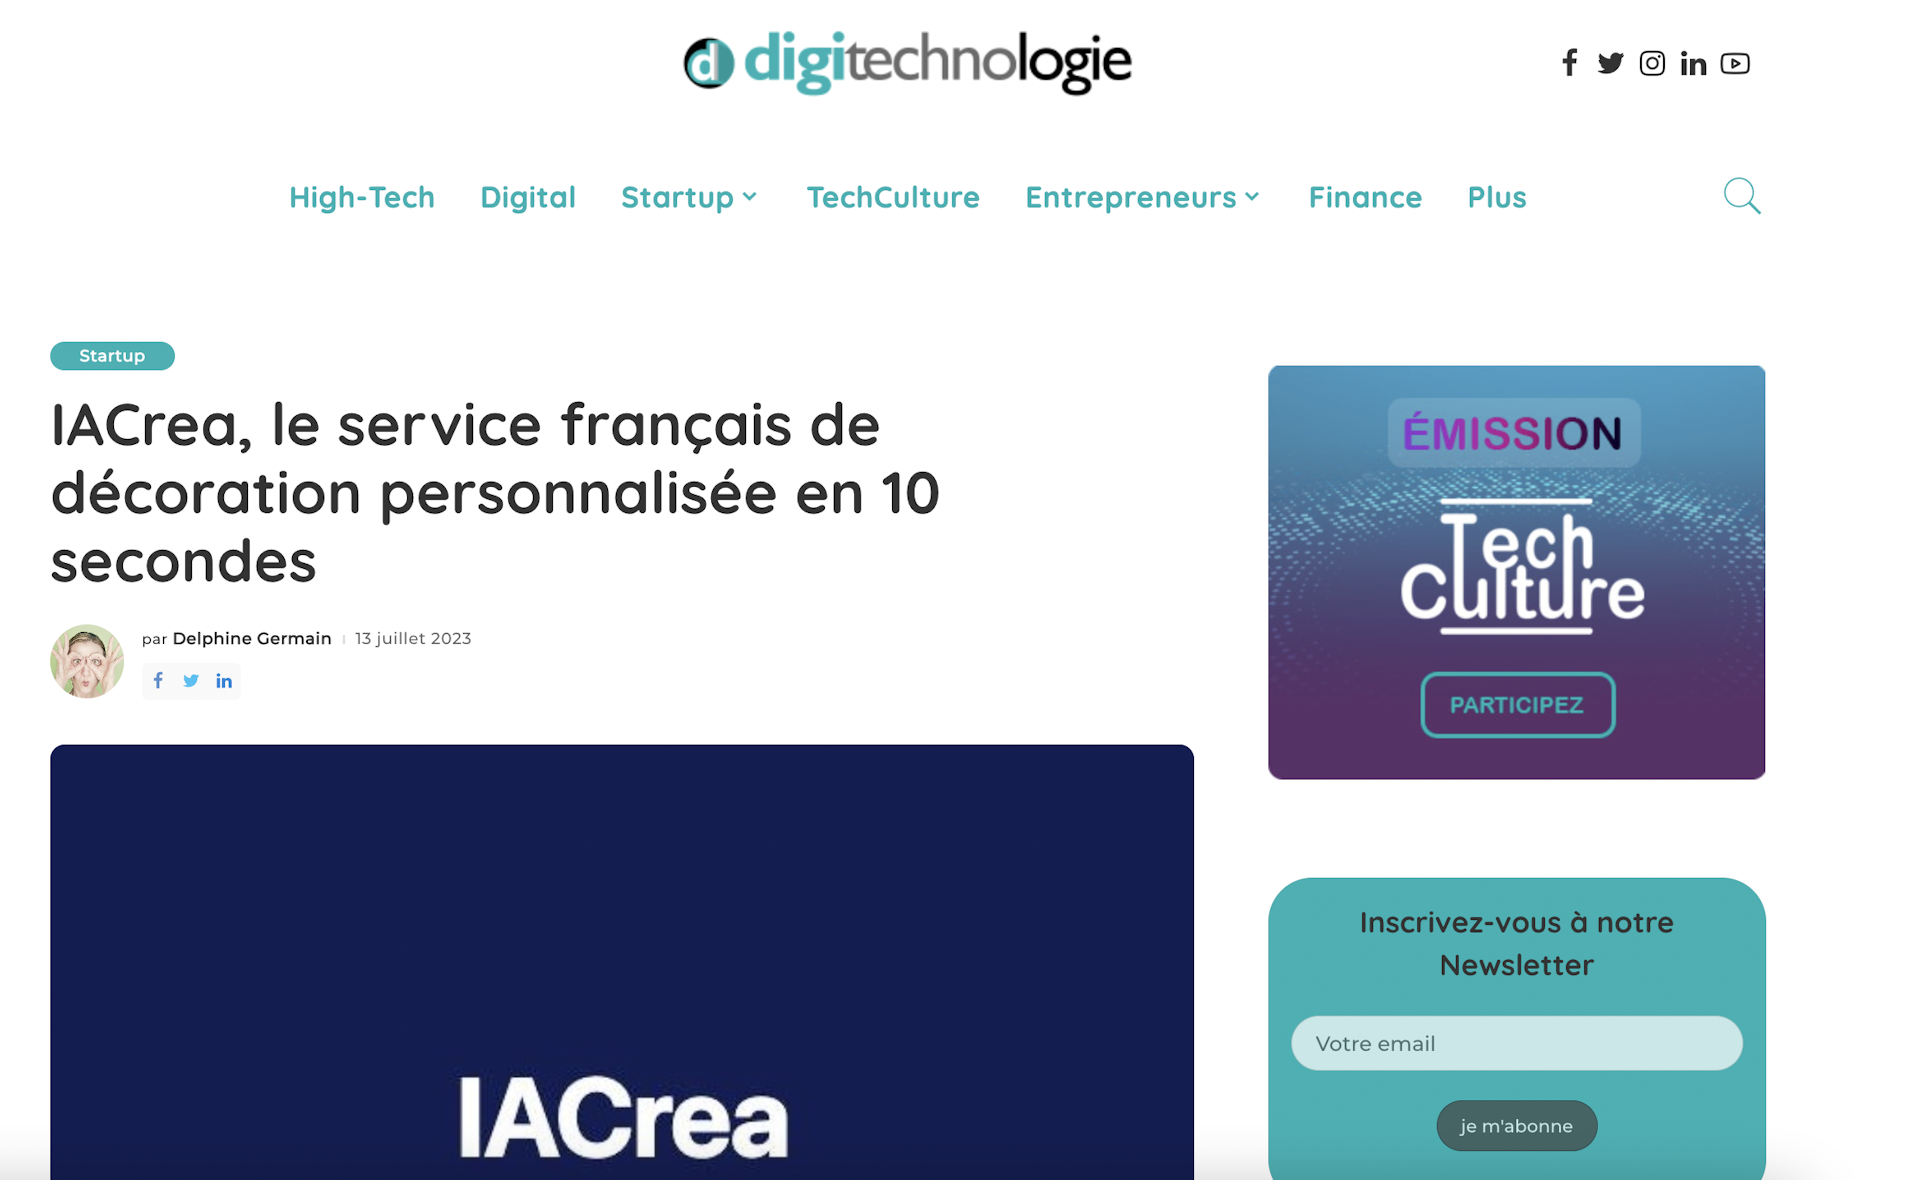 Digitechnologie décrit IACrea comme étant le service français de décoration personnalisée en 10 secondes